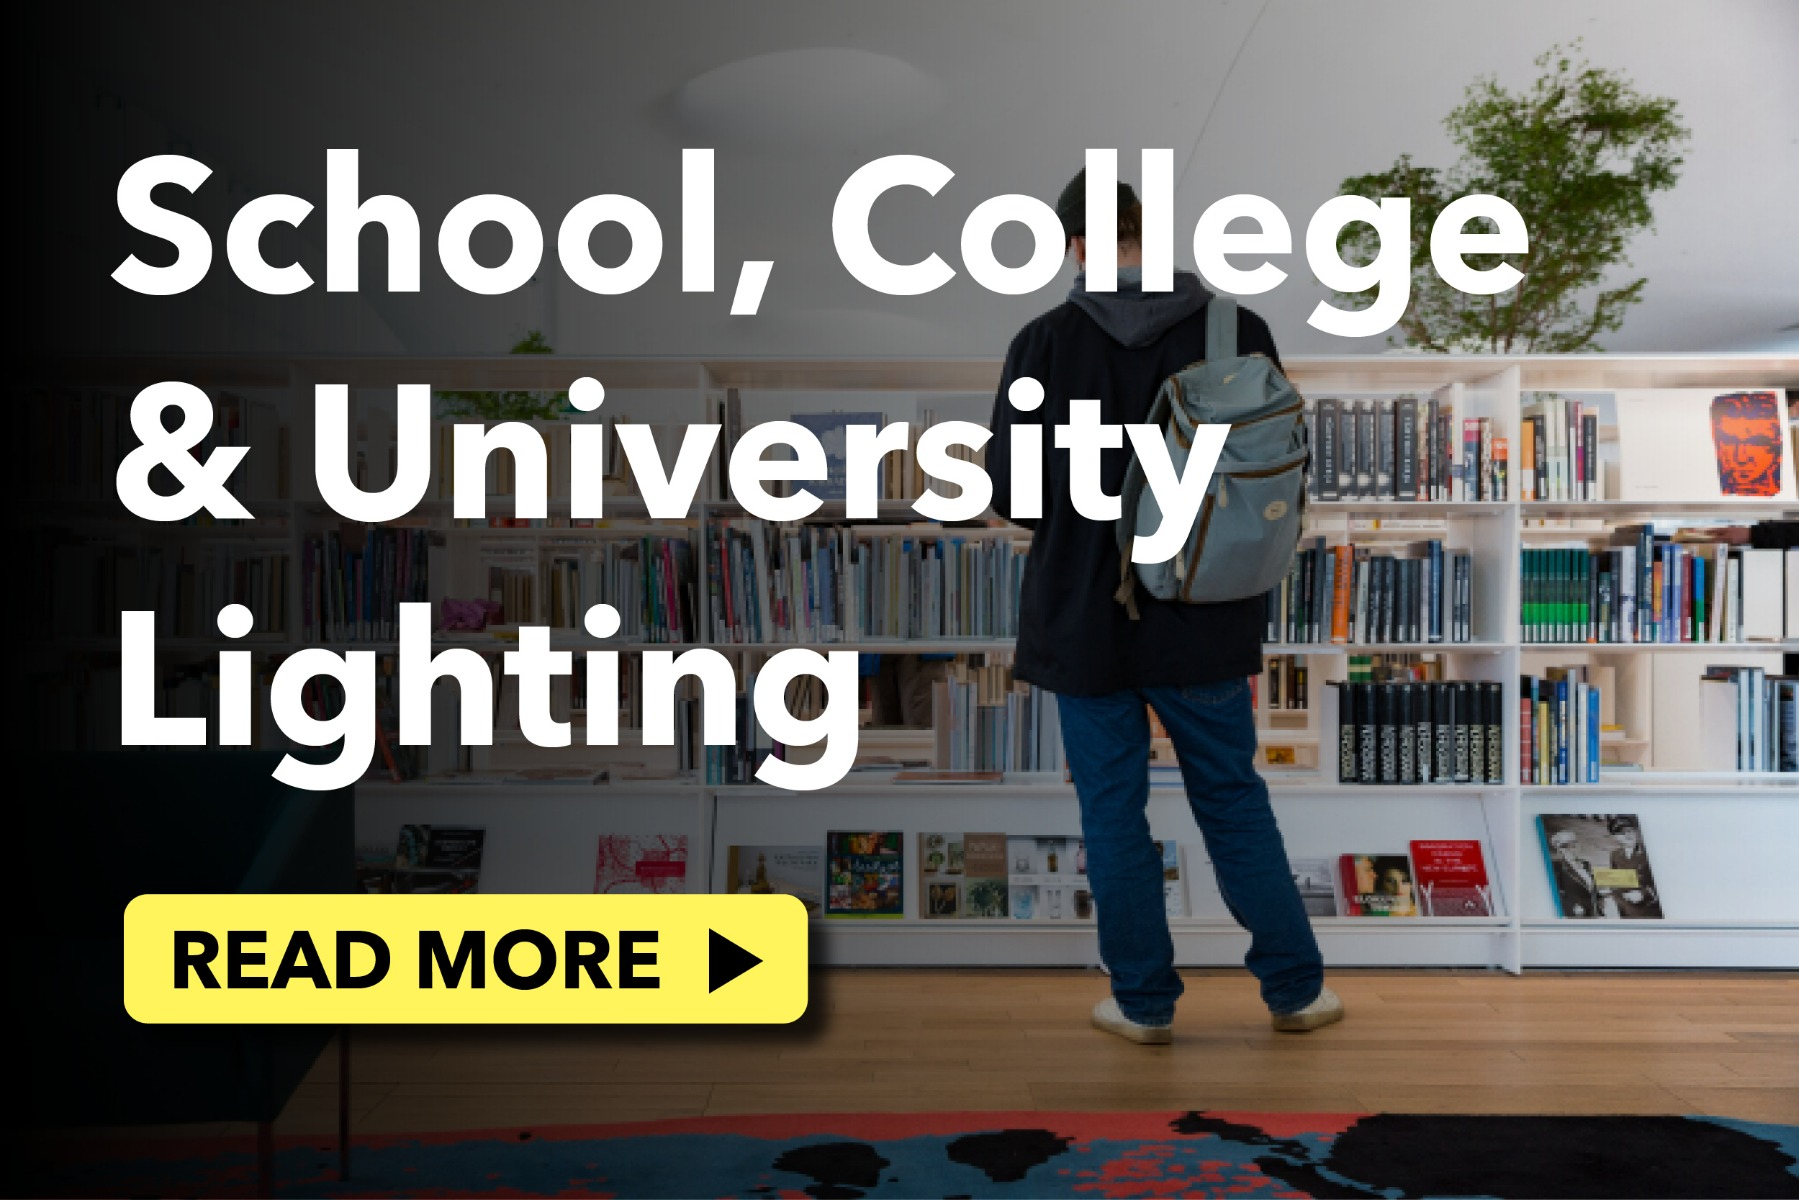 School, College & University Lighting